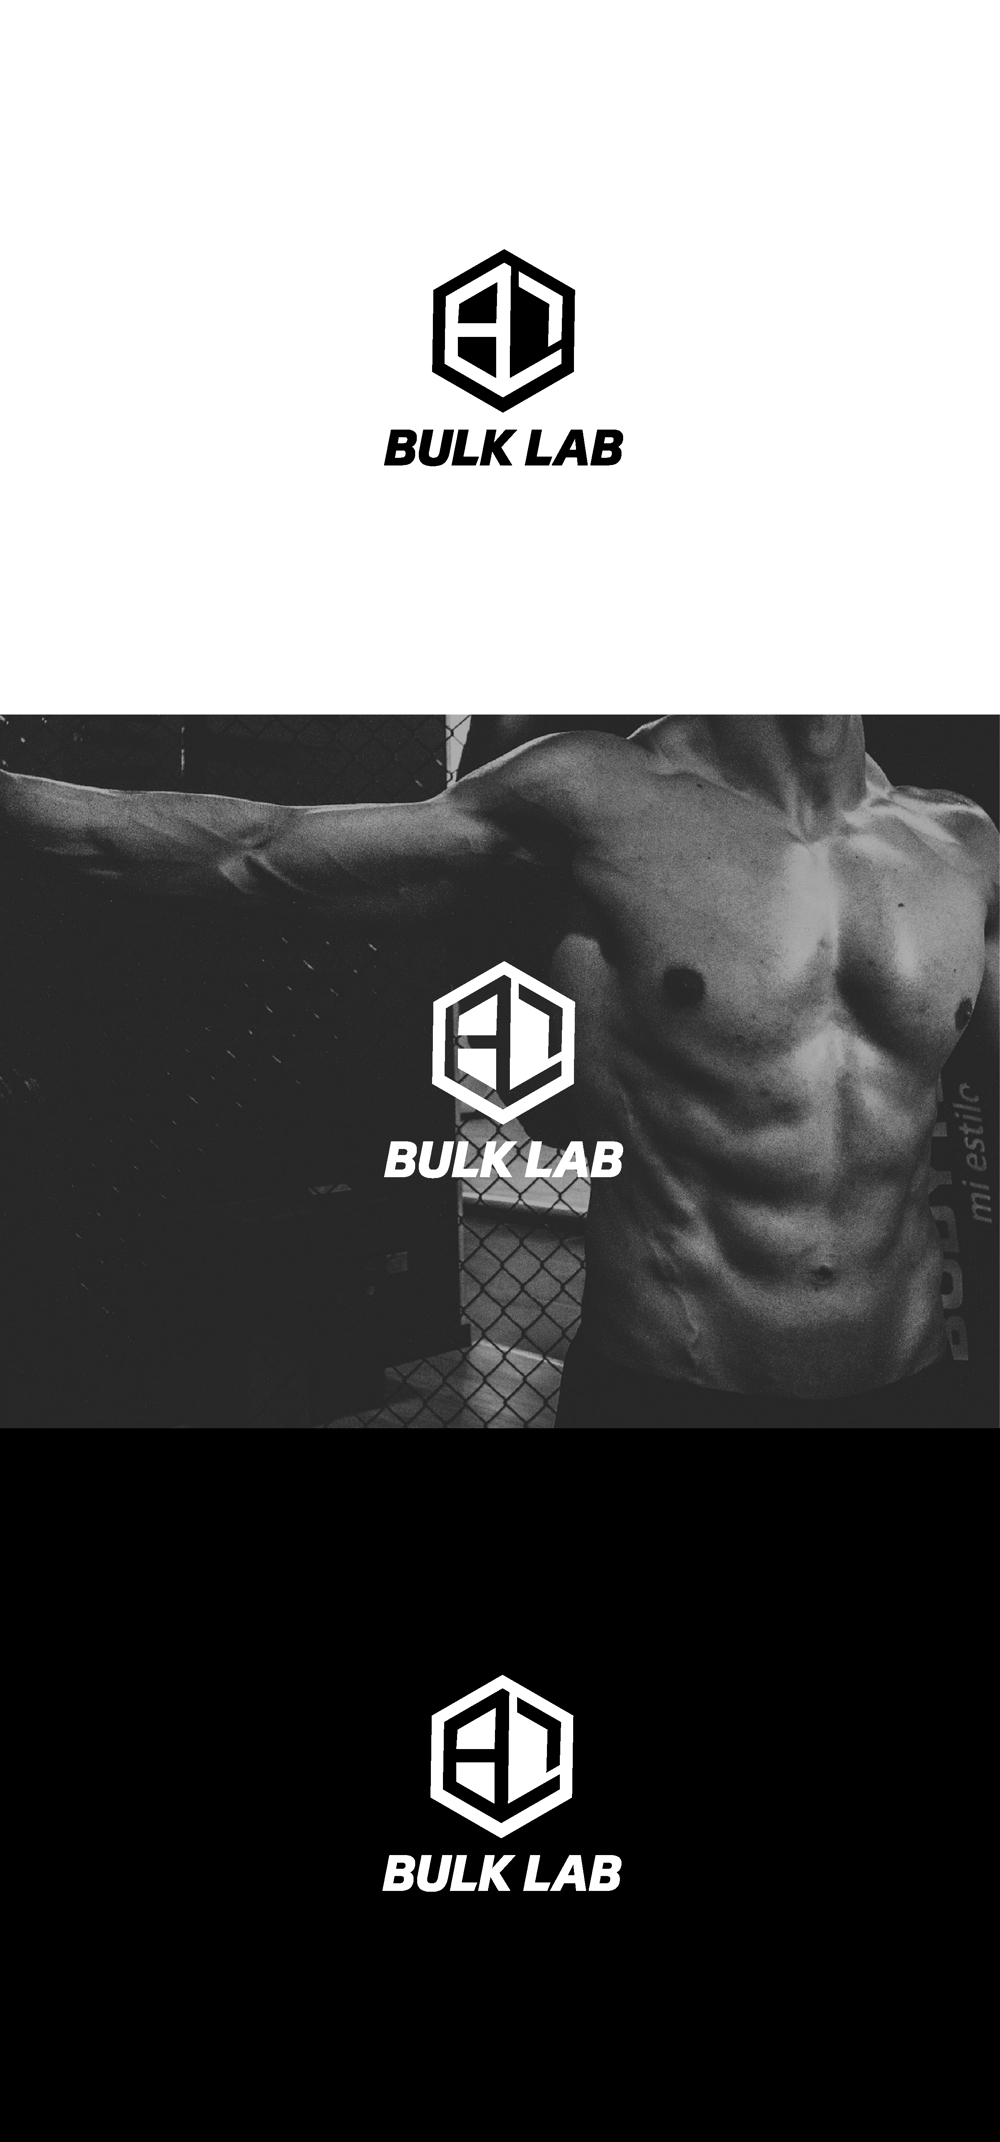 筋トレポータルサイト「BULK LAB」 のロゴ